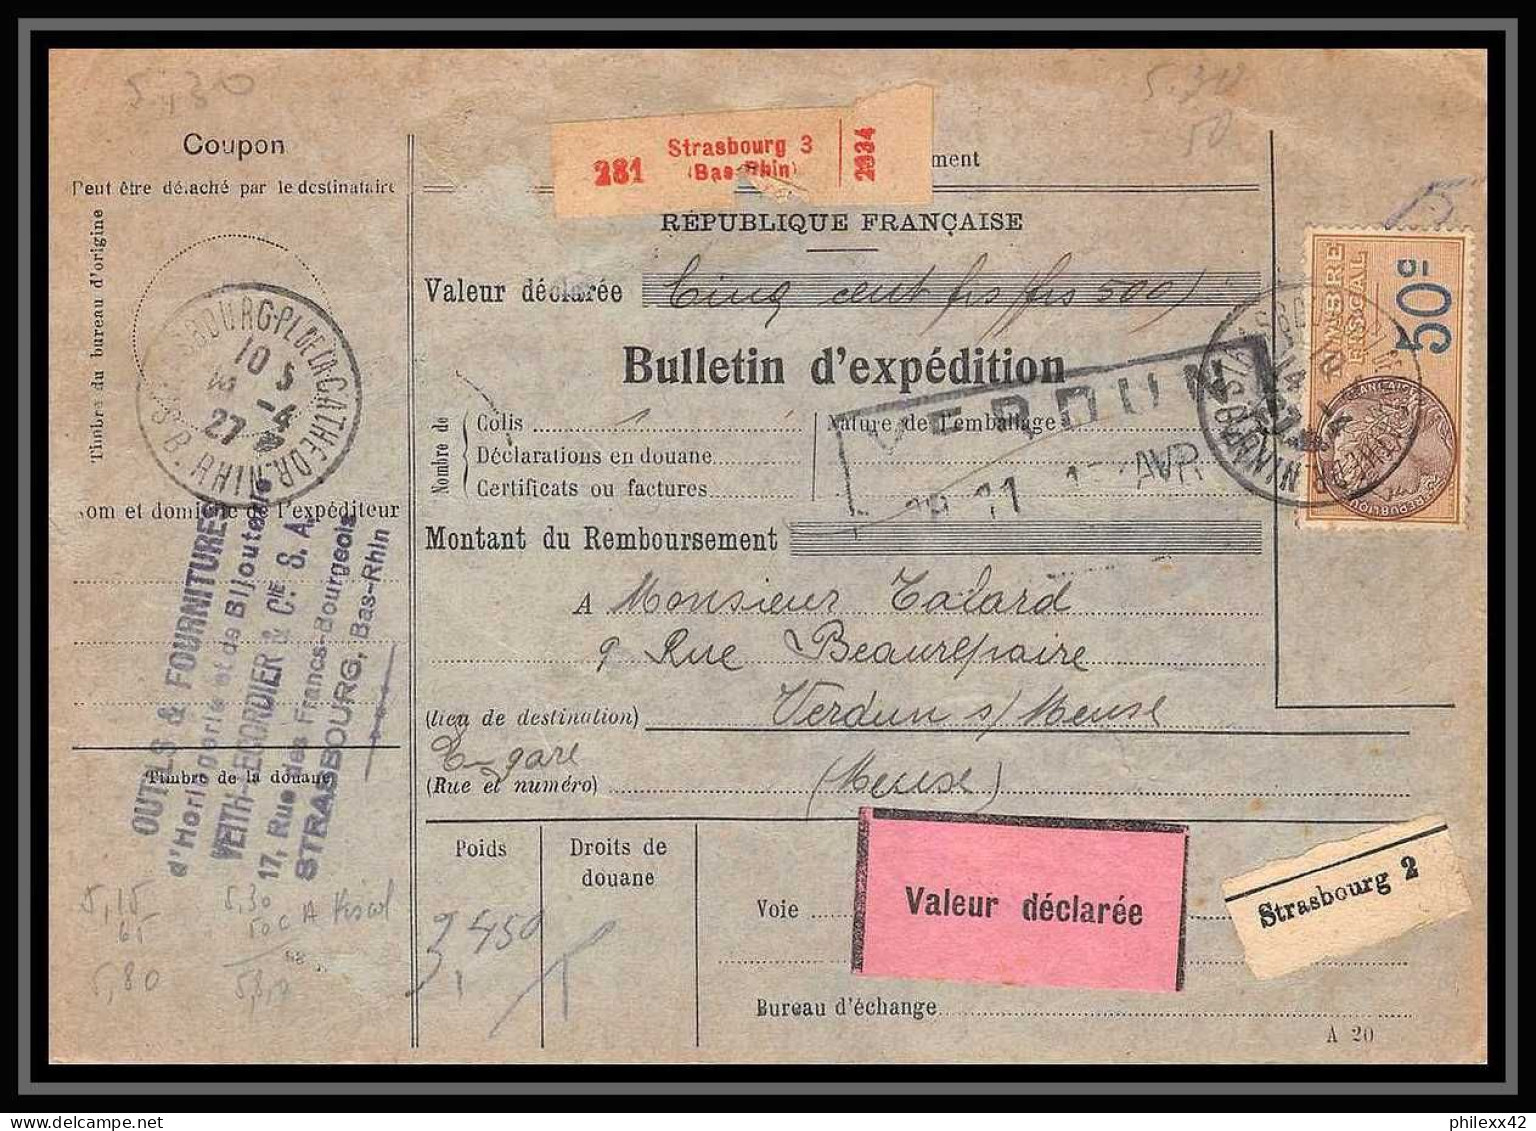 25238/ Bulletin D'expédition France Colis Postaux Fiscal 1927 Strasbourg 3 Pour Verdun Meuse Valeur Déclaré Merson N°145 - Covers & Documents